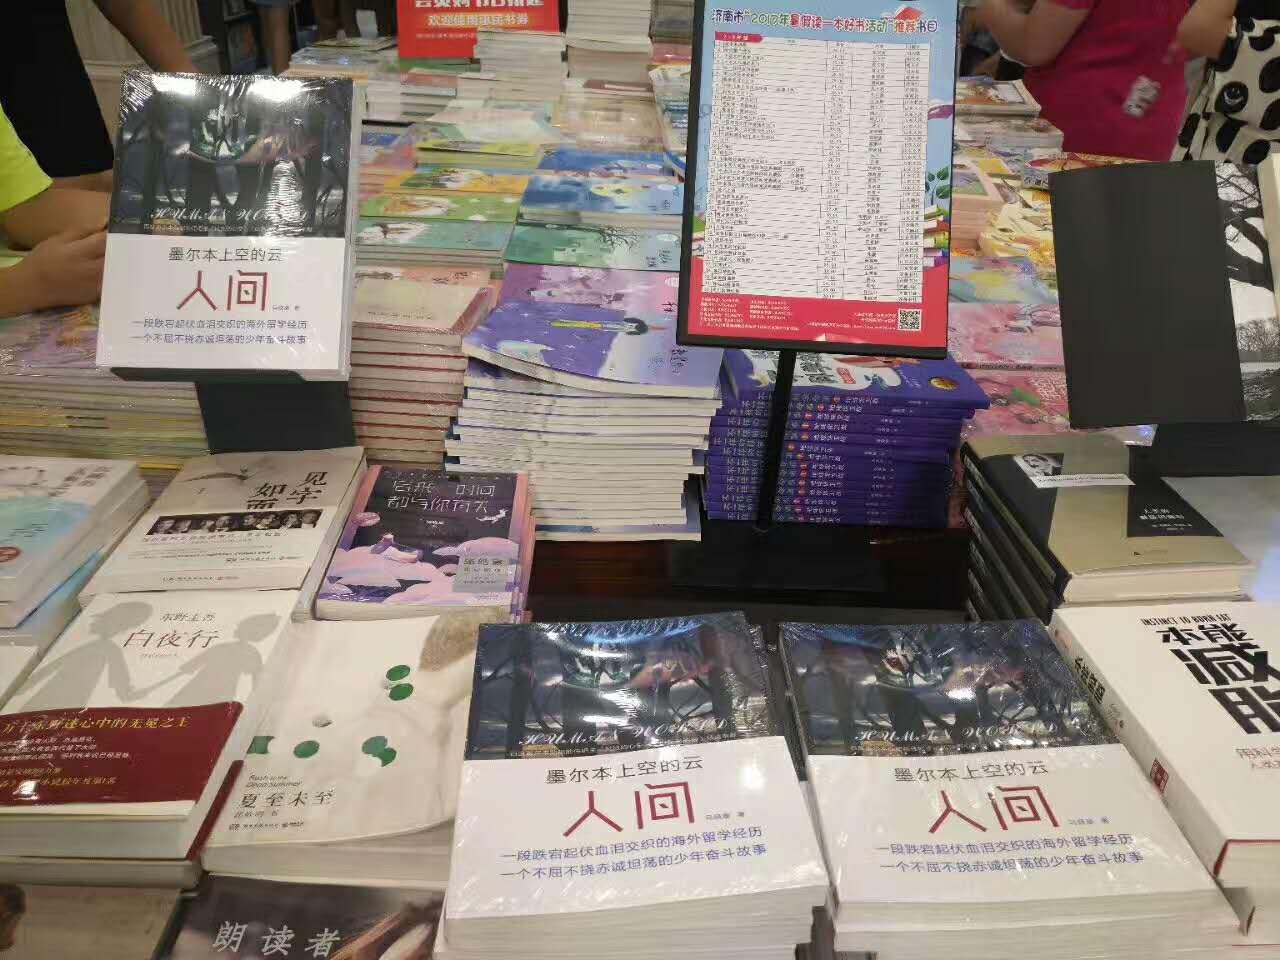 90后作家马晓康读者见面会在济南举行